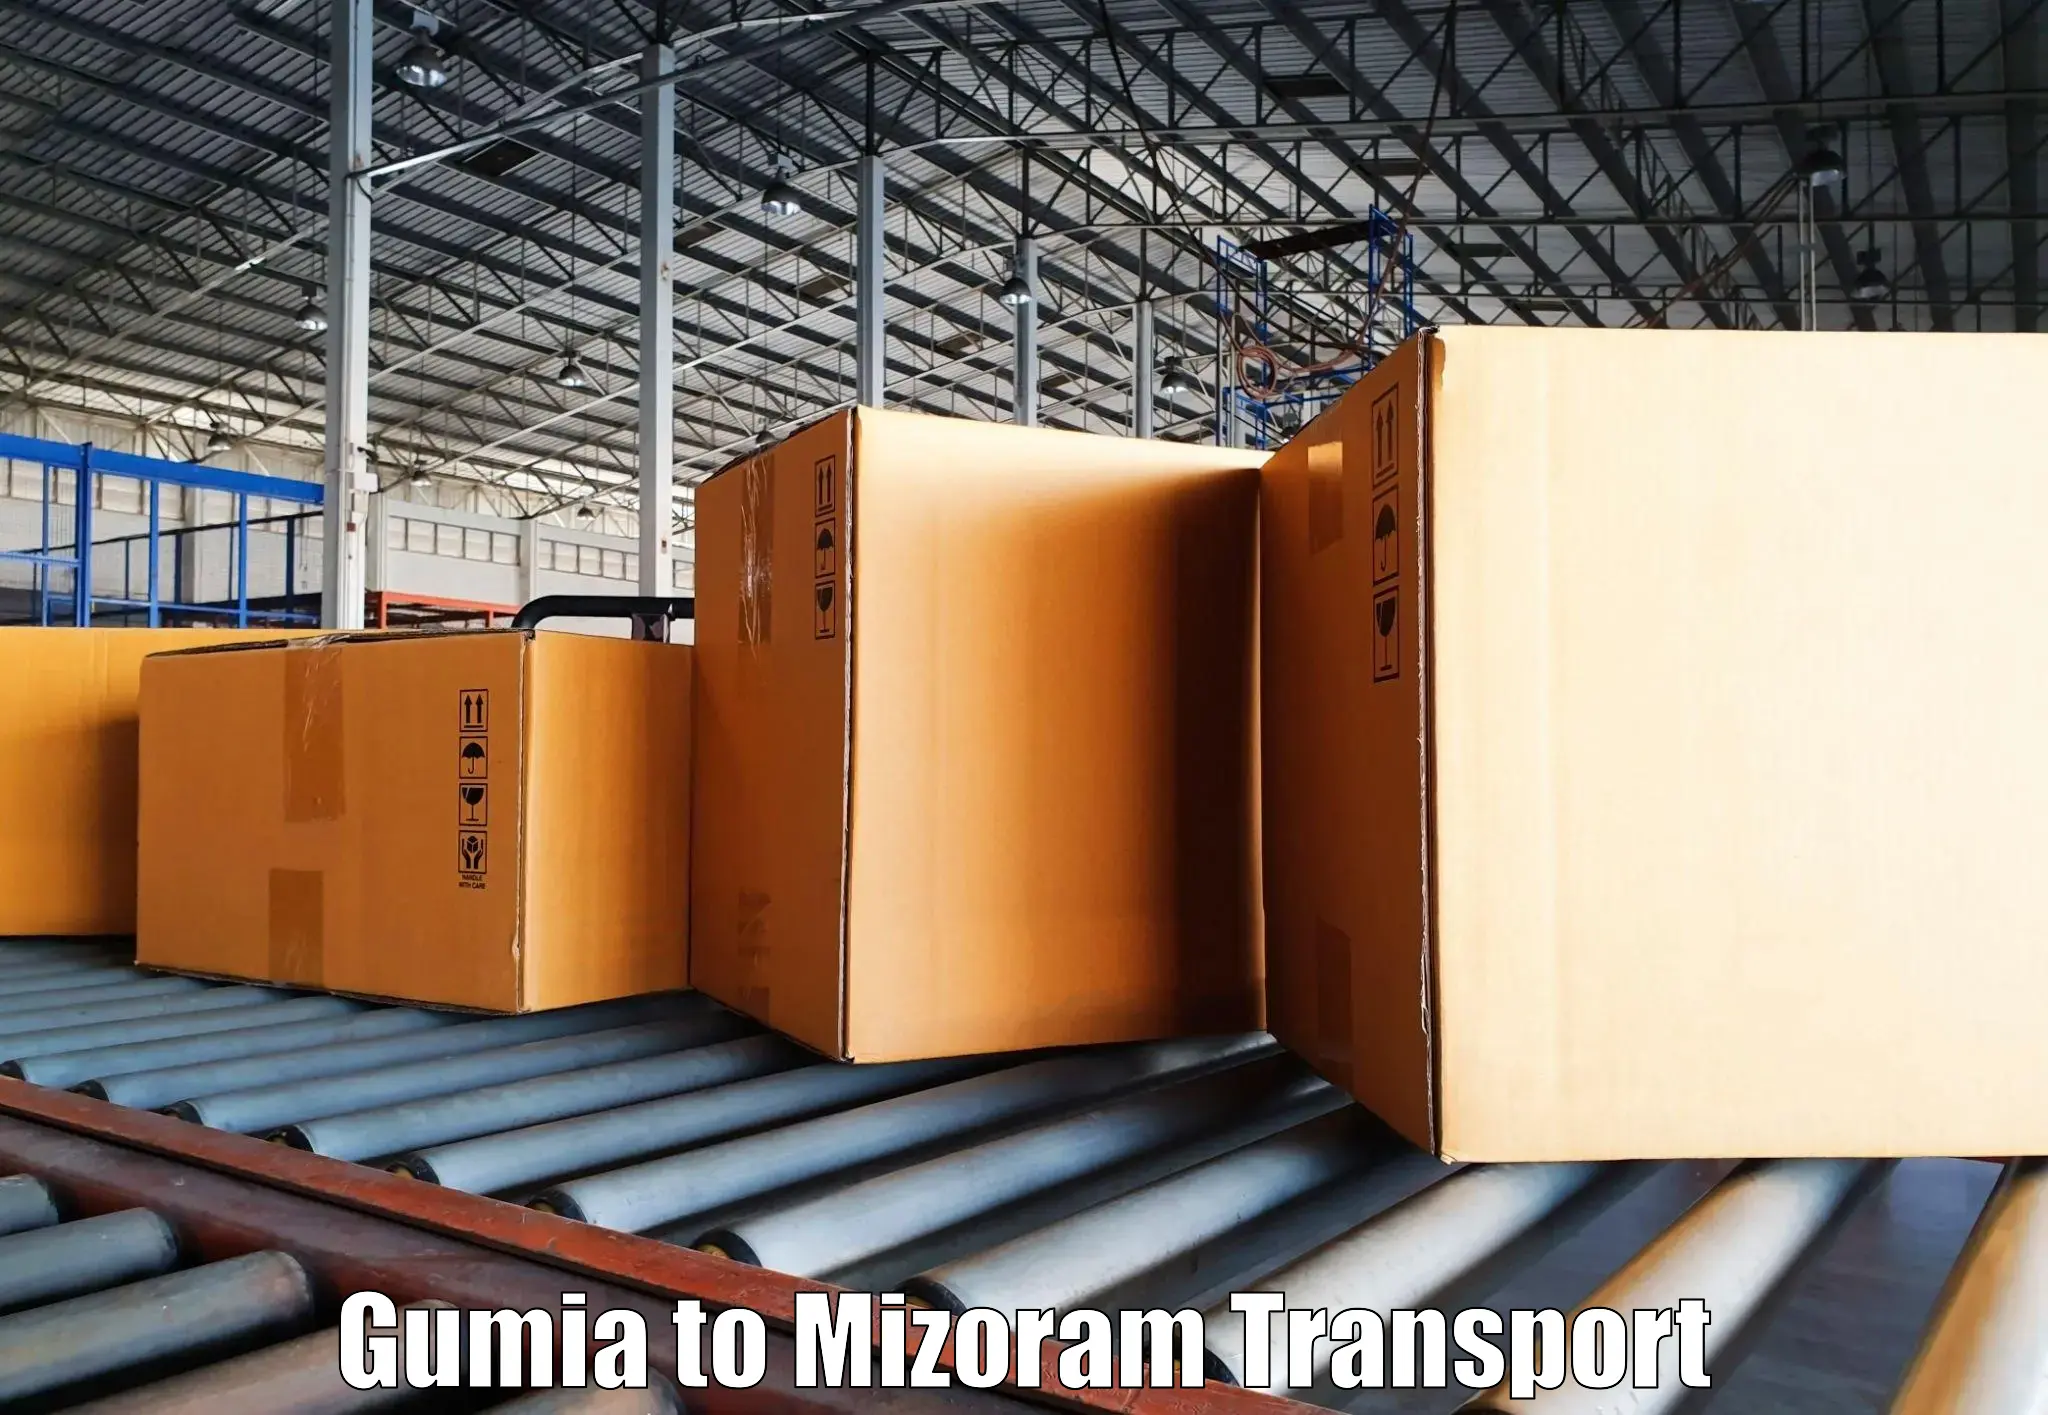 Two wheeler parcel service Gumia to Mizoram